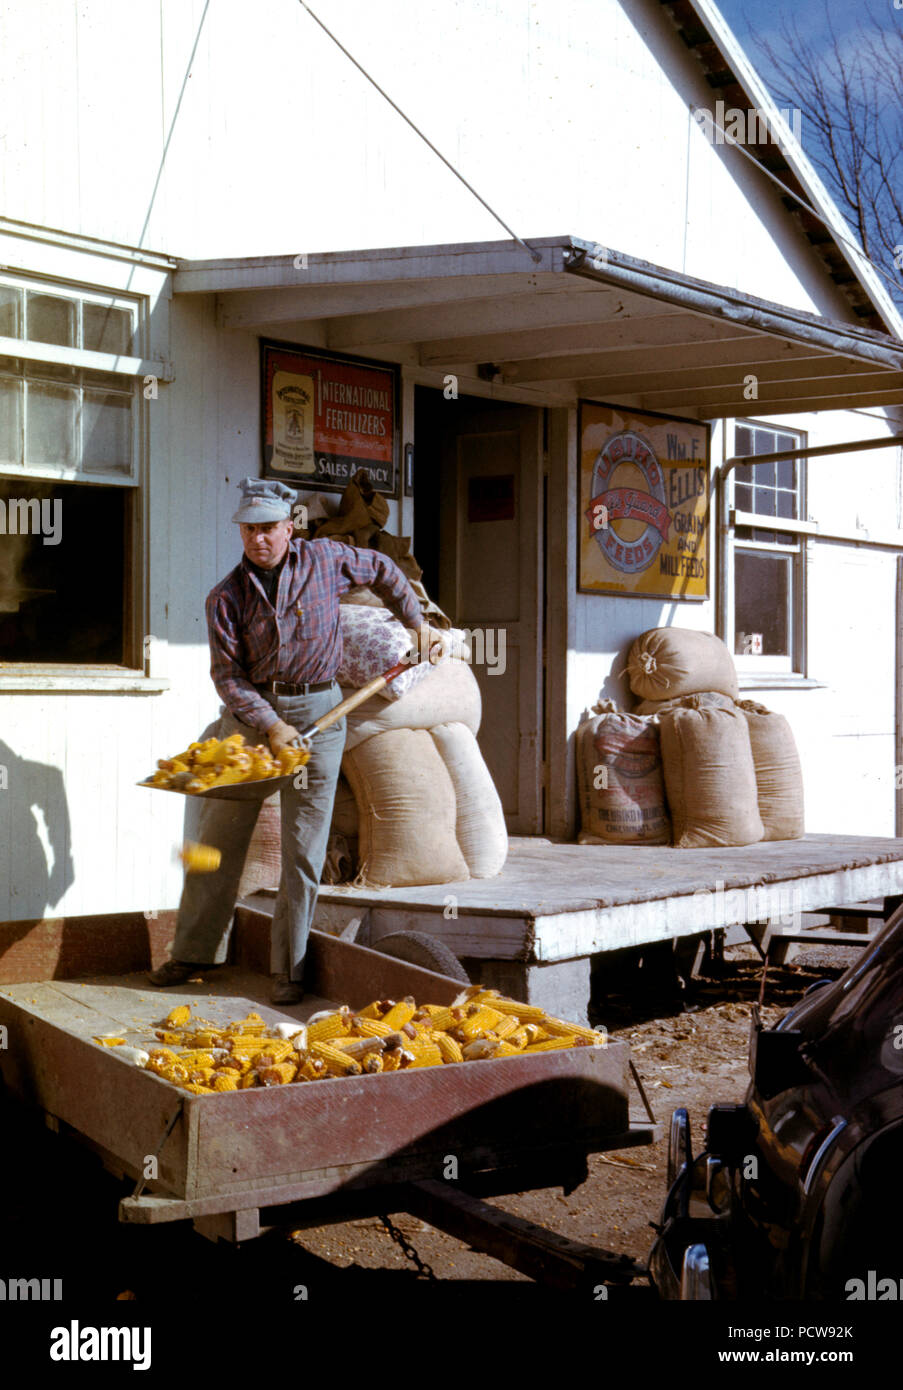 Mann schaufeln Ohren von getrockneten Mais von Wagen durch die Store Fenster Ca. 1942 oder 1943 Stockfoto